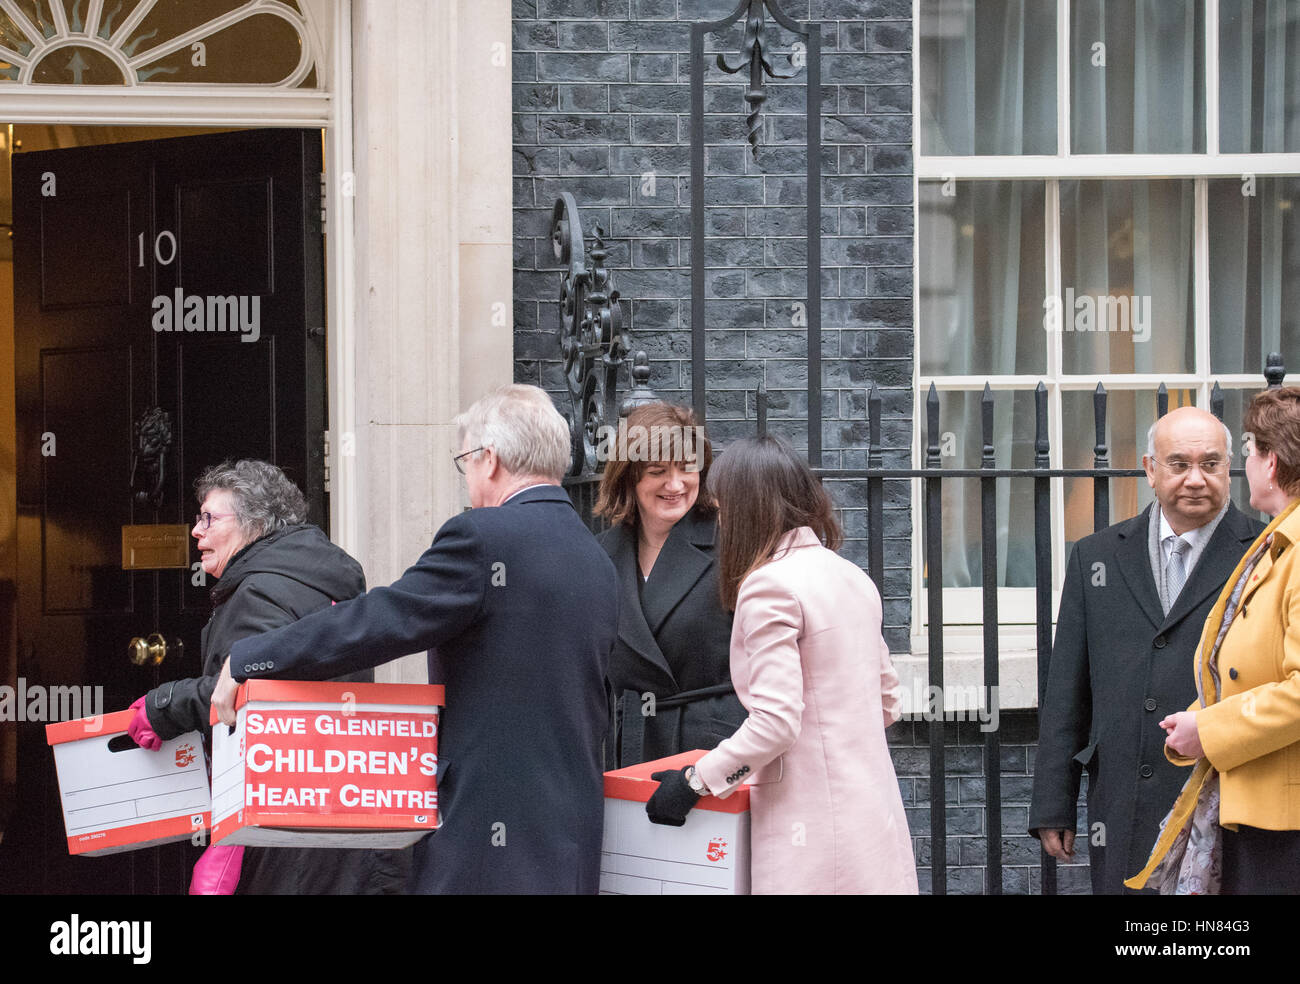 Londra, Regno Unito. 9 febbraio 2017. Manifestanti mano una petizione al 10 di Downing Street contro la chiusura di Glenfields bambini unità di cuore. MP Keith Vaz sulla seconda a destra della foto Credito: Ian Davidson/Alamy Live News Foto Stock